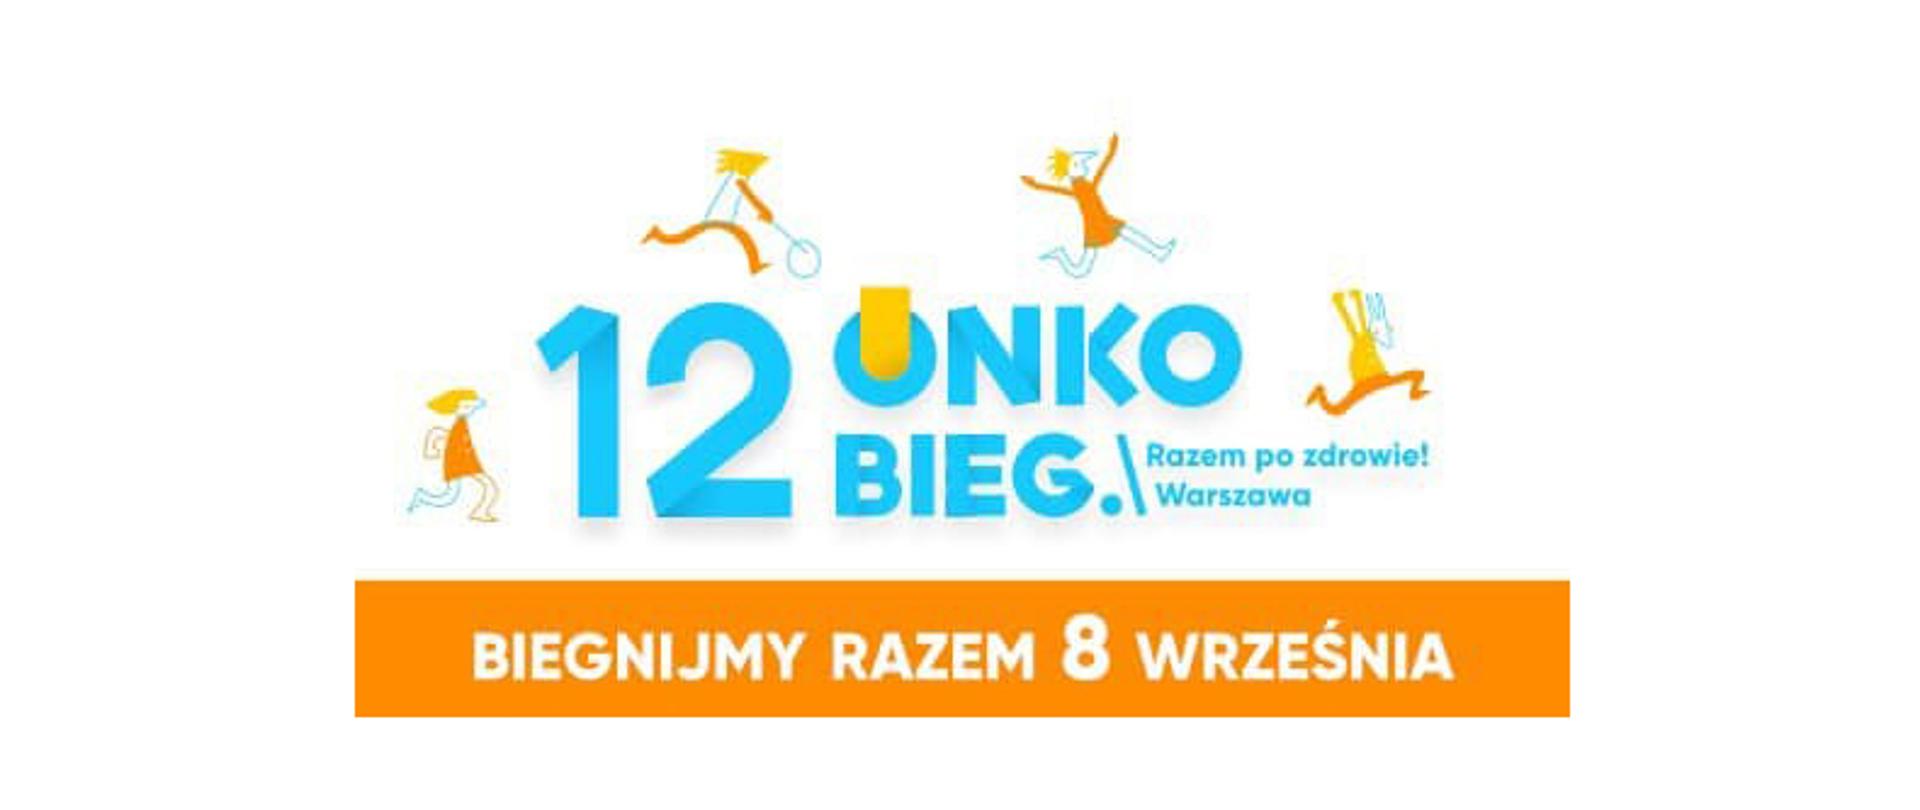 12 Onkobieg Razem po zdrowie! Warszawa 2019 